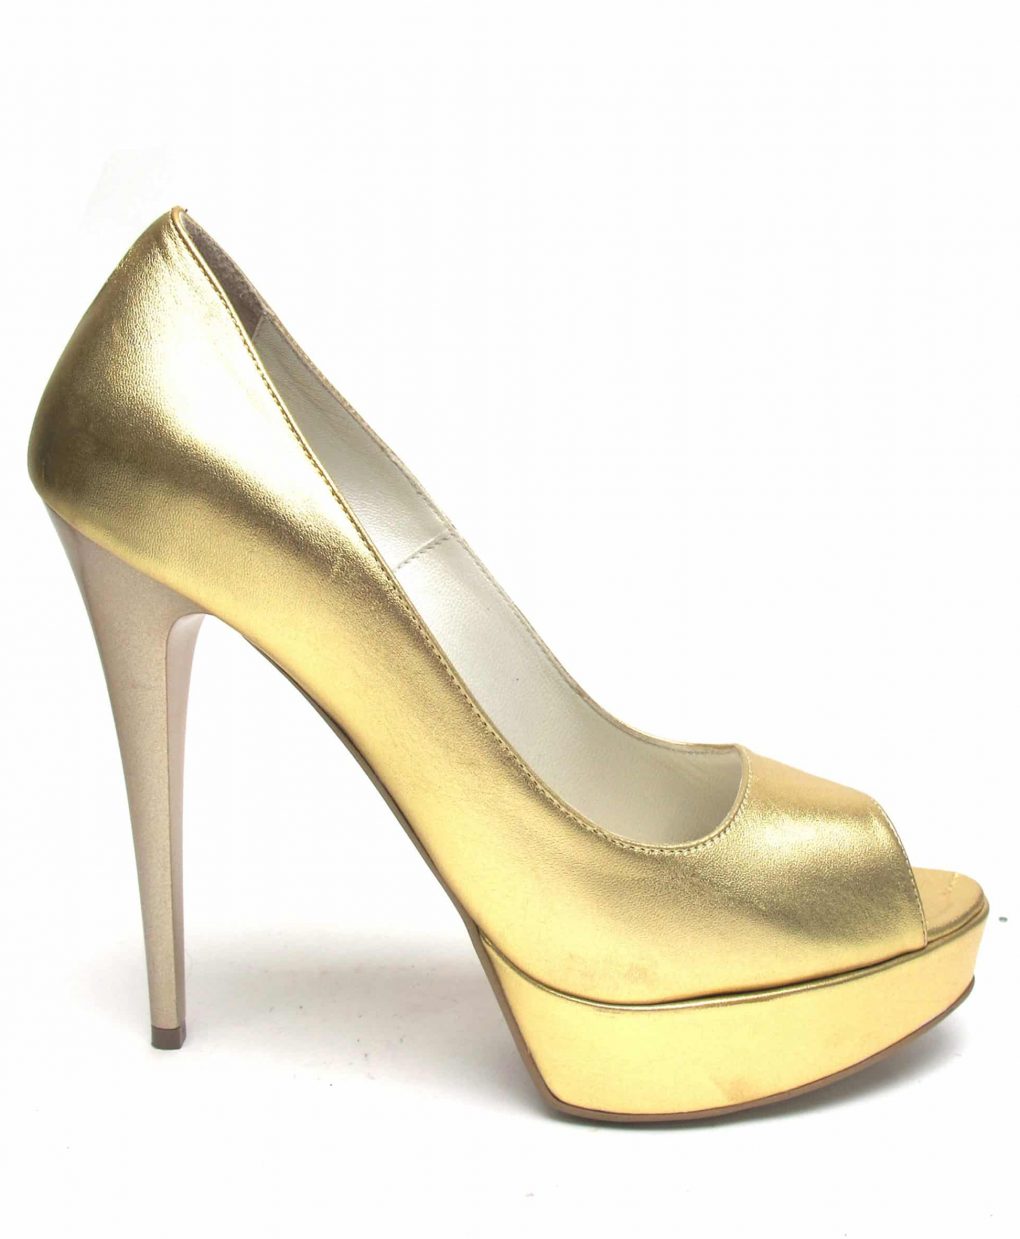 Veronesse Gold heels leather open toe heels